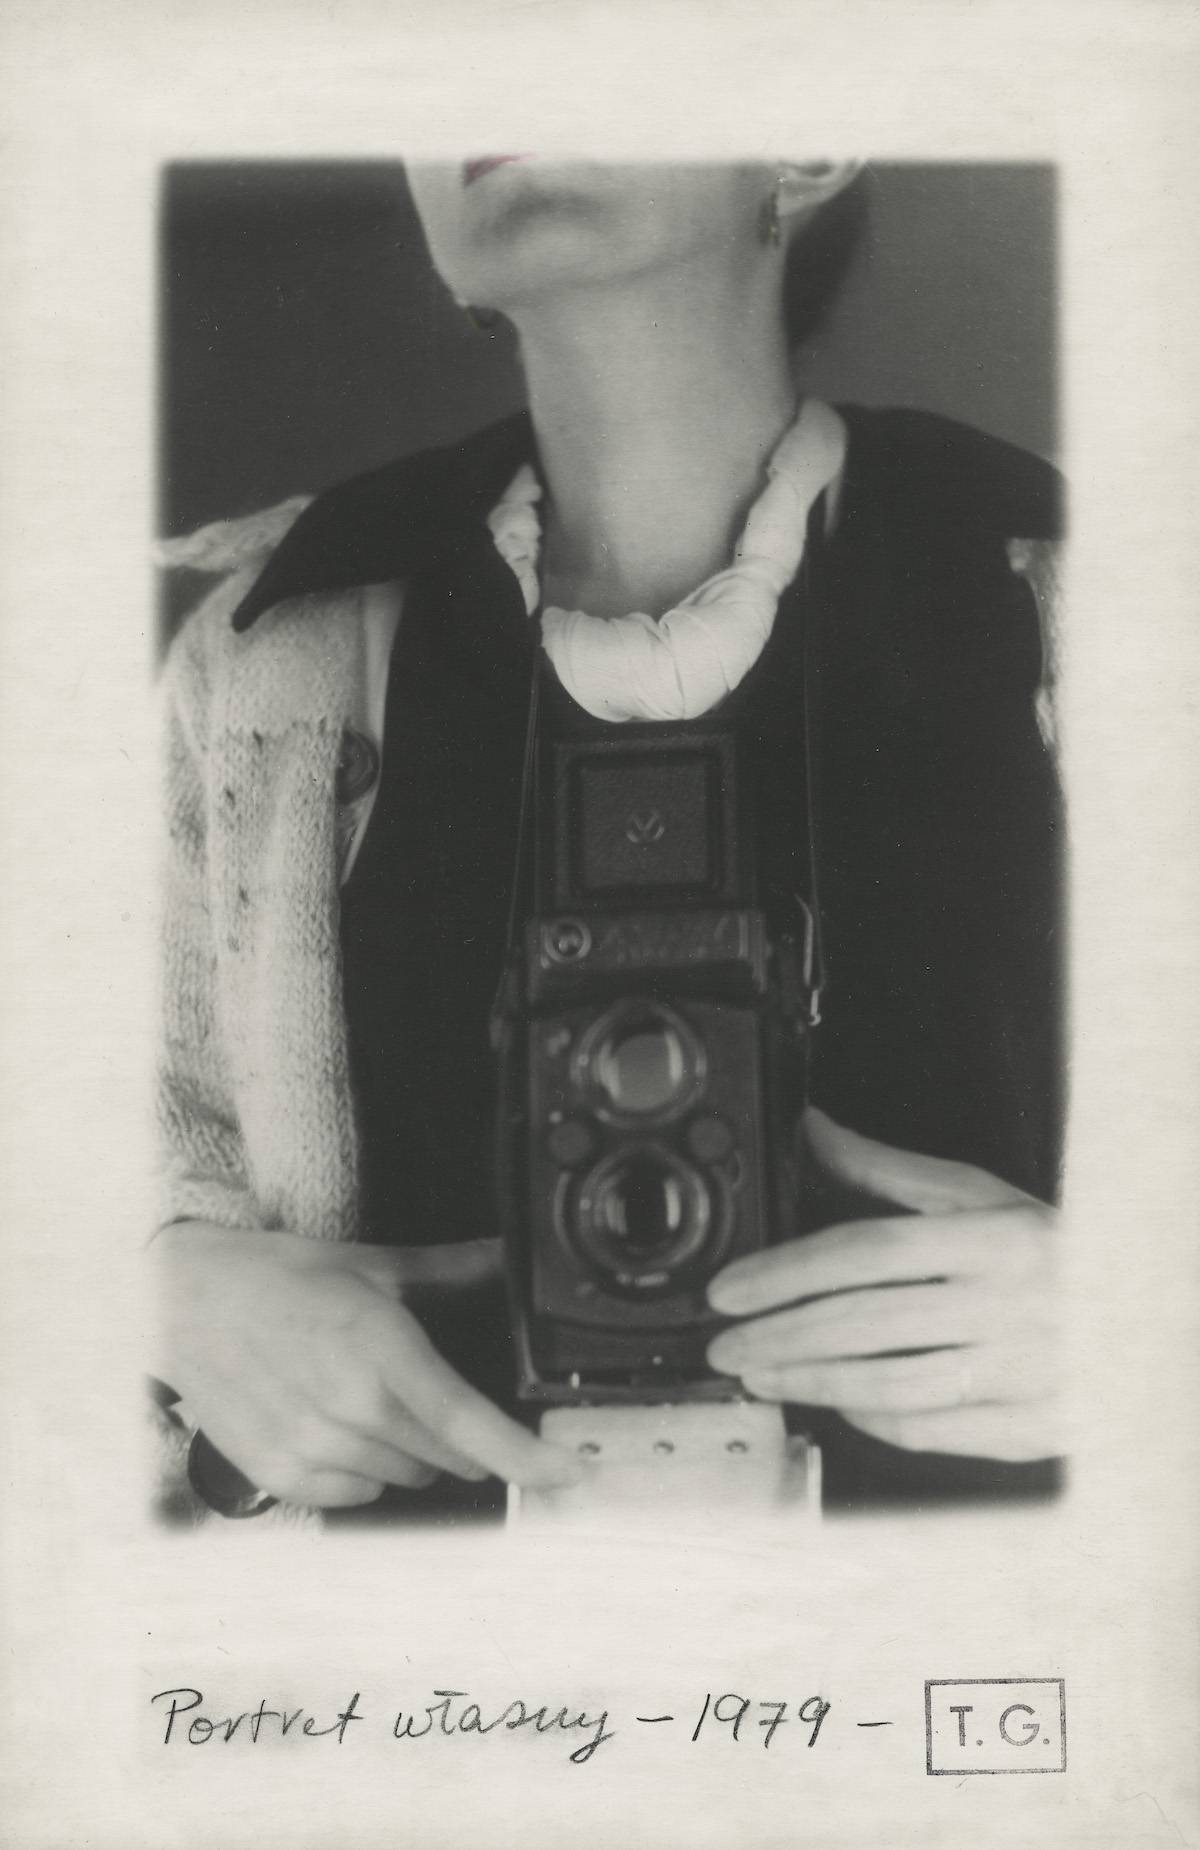 Teresa Gierzyńska, Portret własny, 1979, odbitka żelatynowo-srebrowa barwiona aniliną, papier matowy, tektura, ołówek, stempel, 29,5 x 19 cm, unikat. Dzięki uprzejmości artystki i Gunia Nowik Gallery